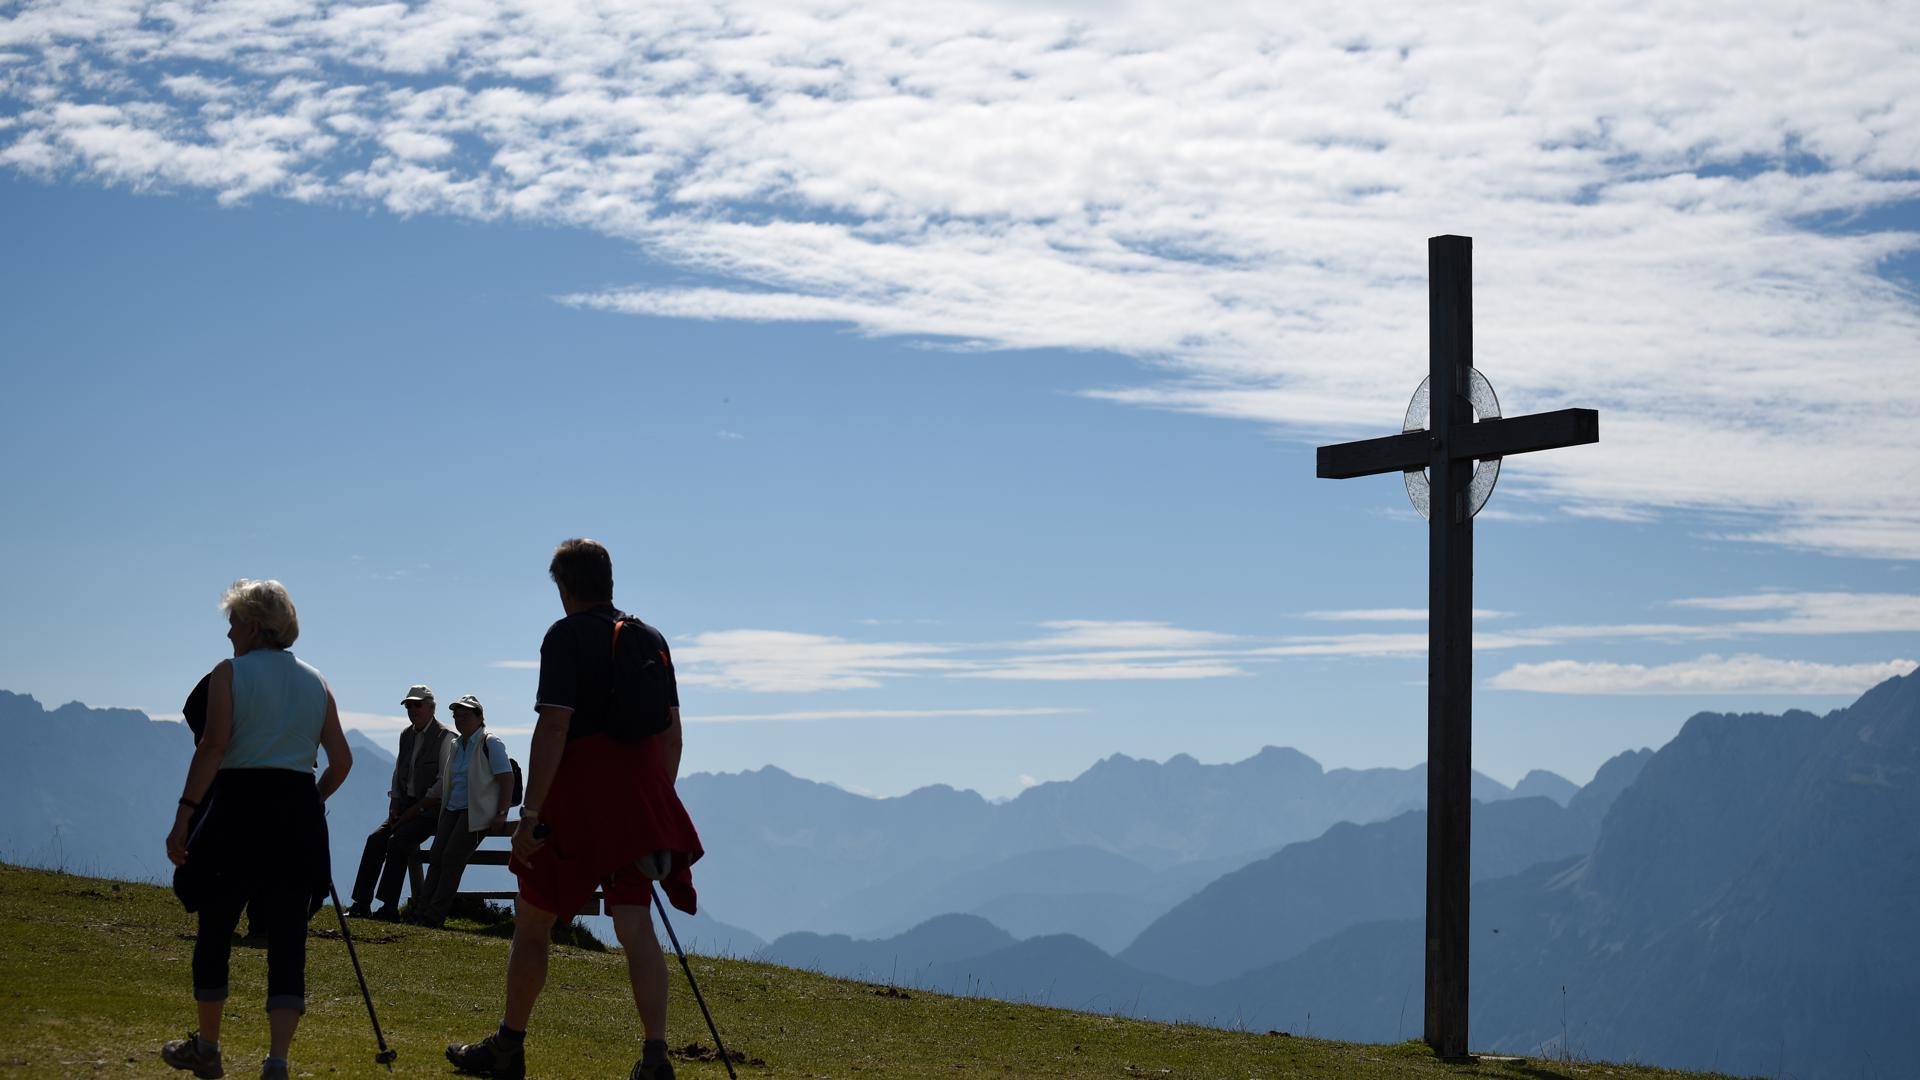 Gipfelkreuze, wie hier auf dem Wank bei Garmisch-Partenkirchen, sind auch in Süddeutschland zum Objekt eines heftigen Streits geworden. 